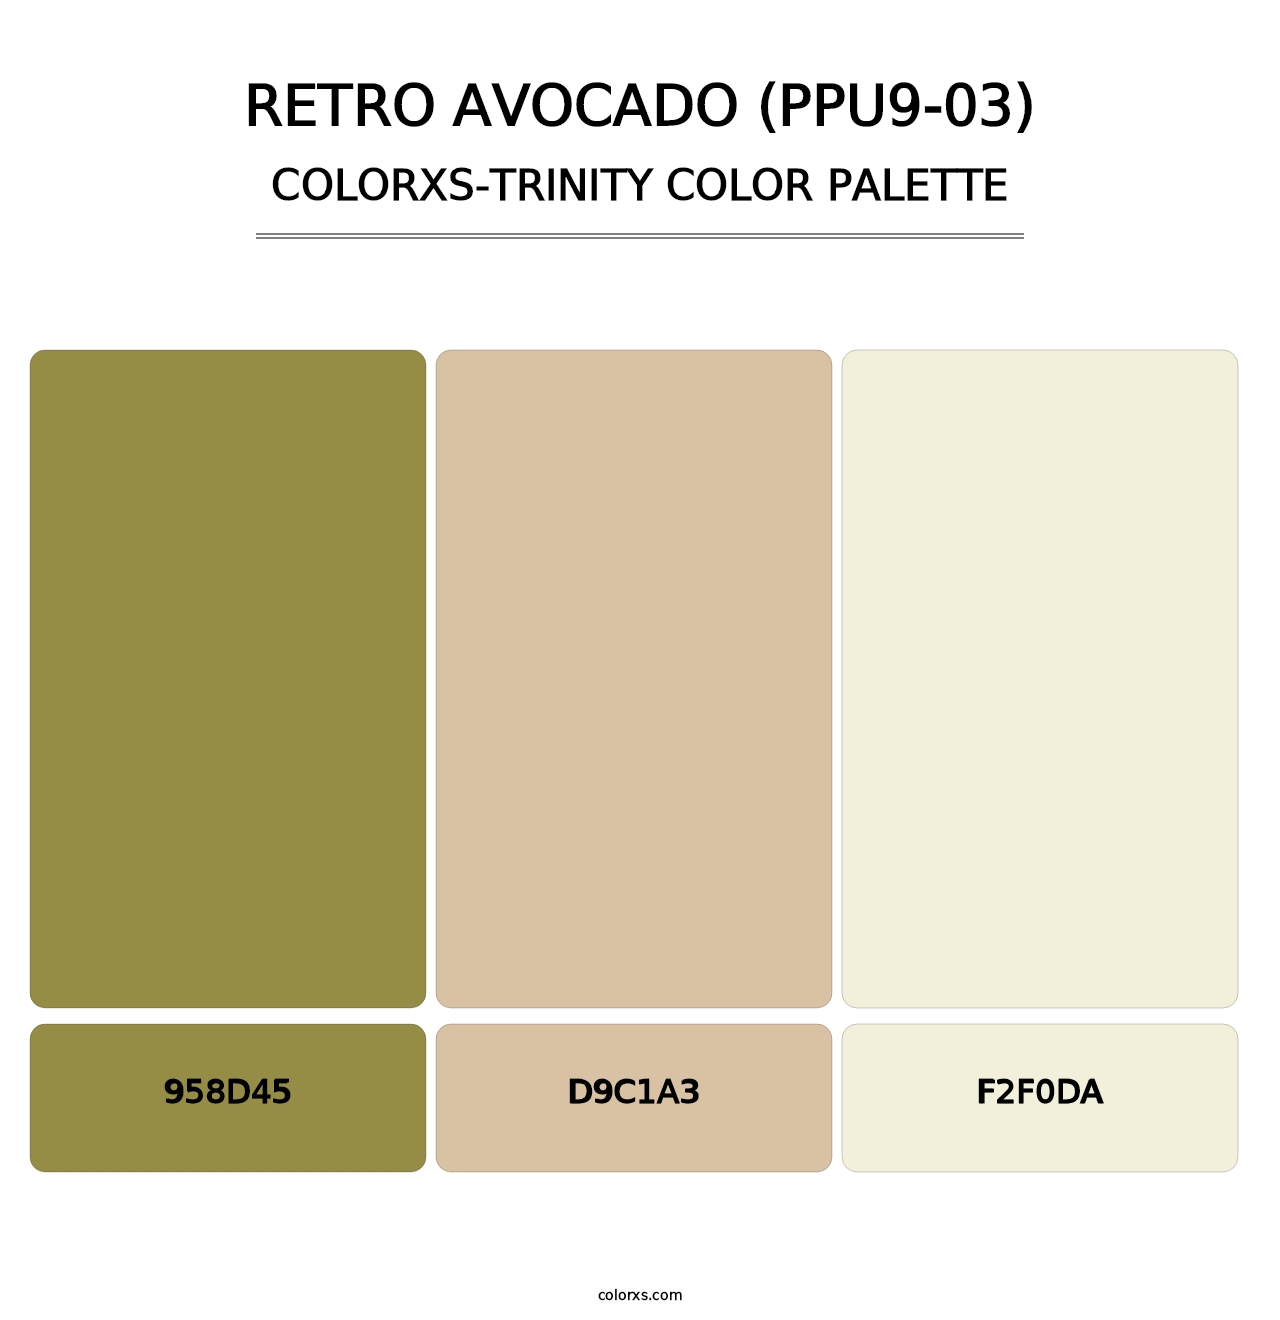 Retro Avocado (PPU9-03) - Colorxs Trinity Palette